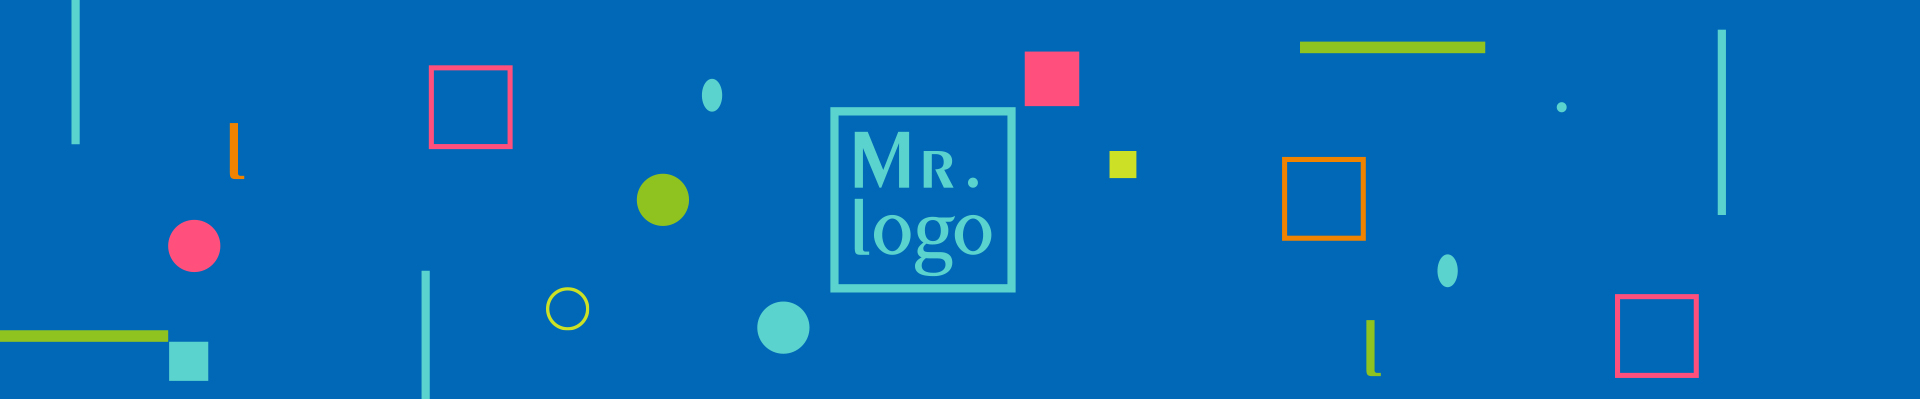 深圳logo設計-先生社區